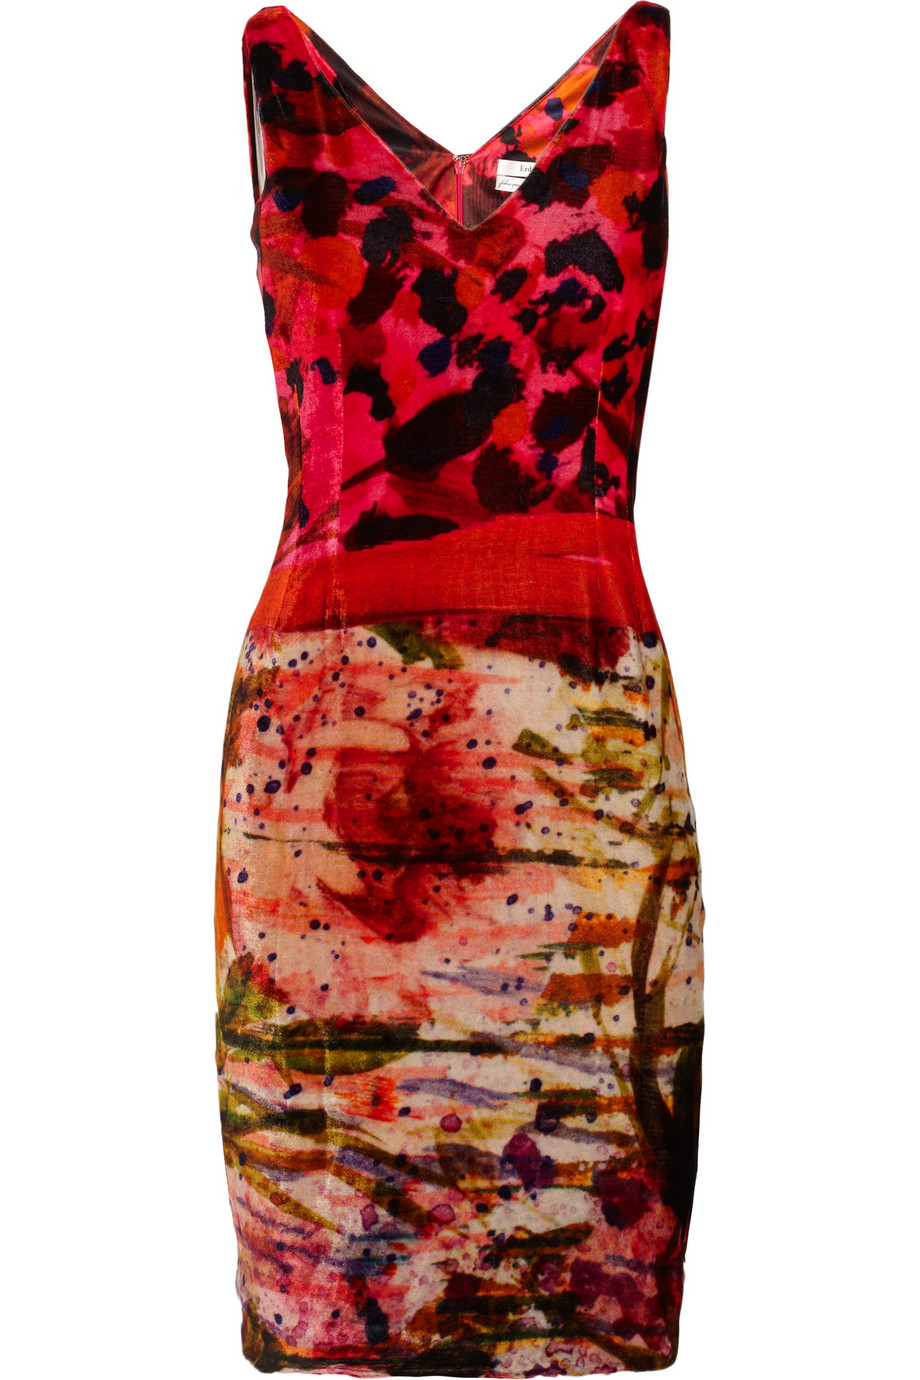 Lyst - Erdem Gail Printed Velvet Dress in Red